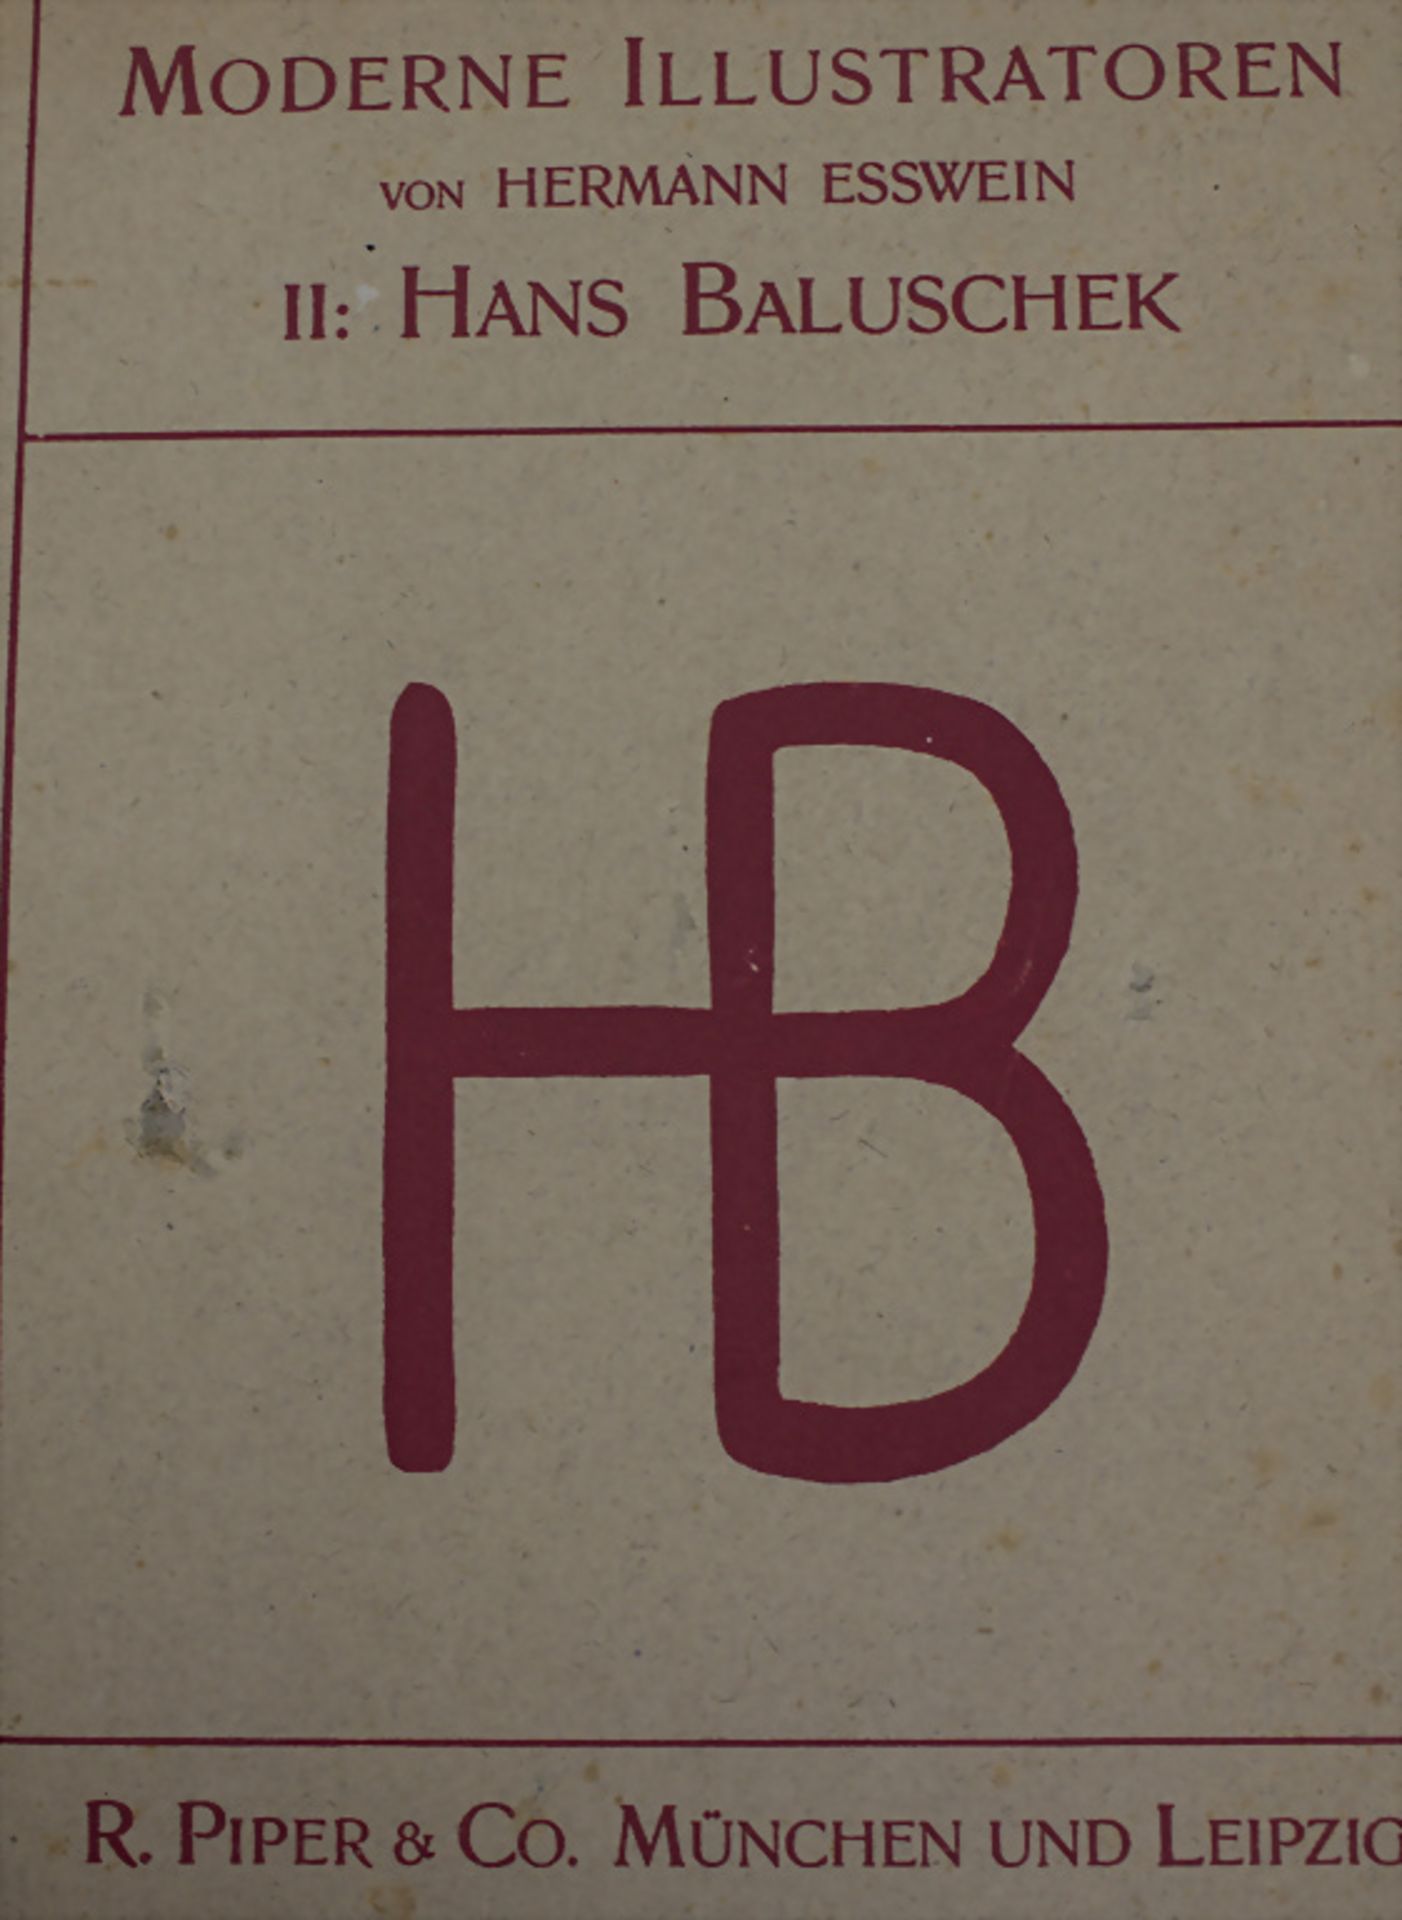 Hermann Esswein: Moderne Illustratoren, 8 Bände, München, o.J. (1904-1906) - Bild 4 aus 12